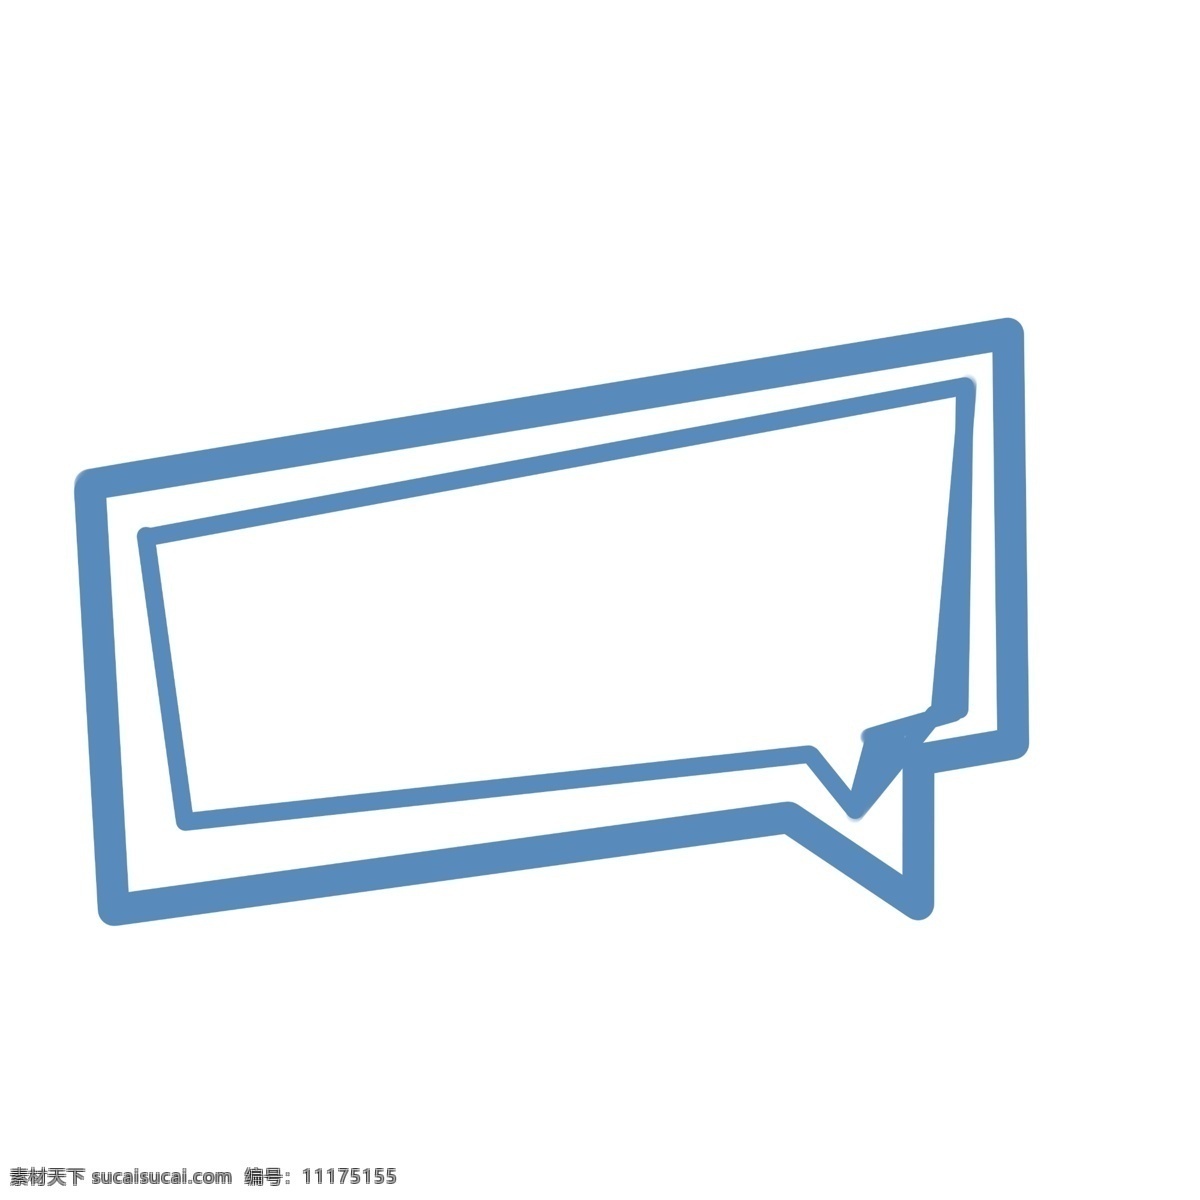 简单 对话框 方形 卡通 可爱 对话款 手绘 蓝色 简约 框 短信款 卡通手绘